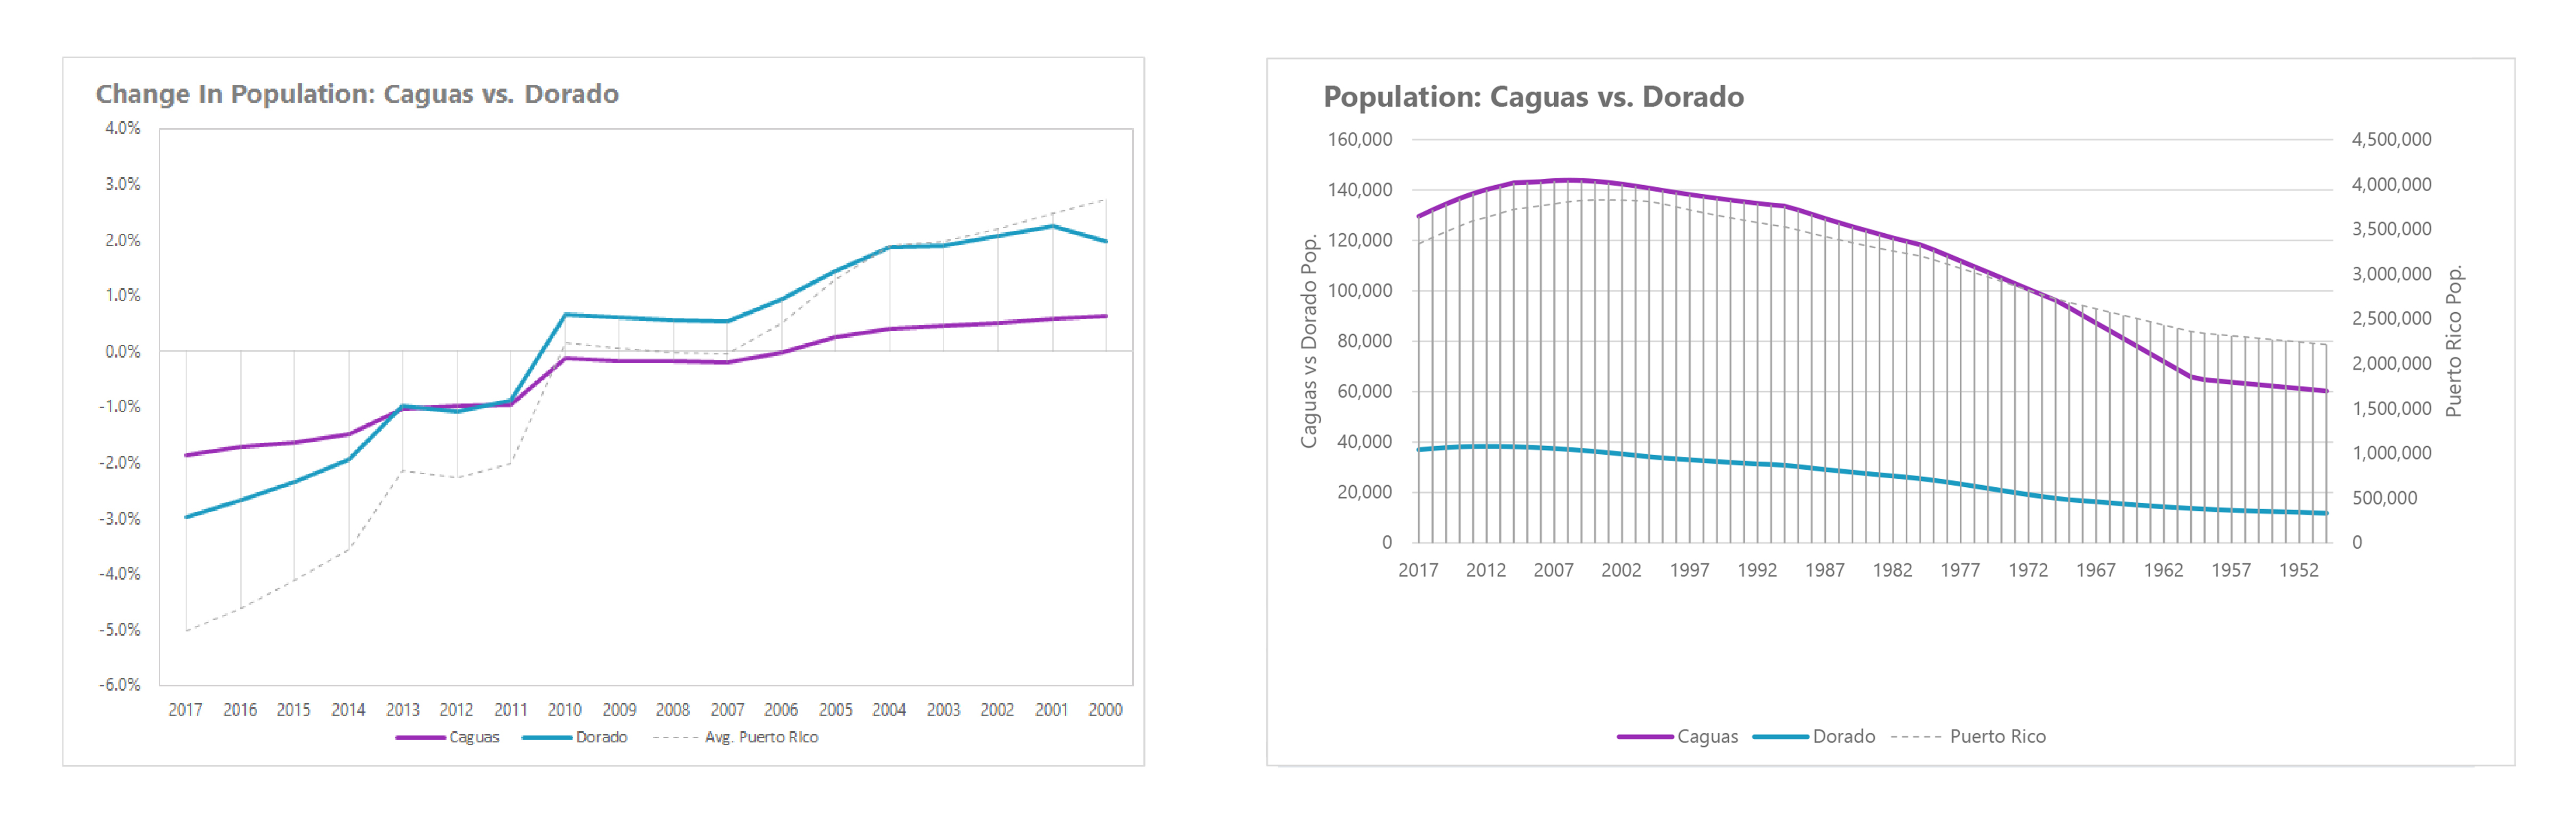 Caguas and Dorado and Puerto Rico, Population Data